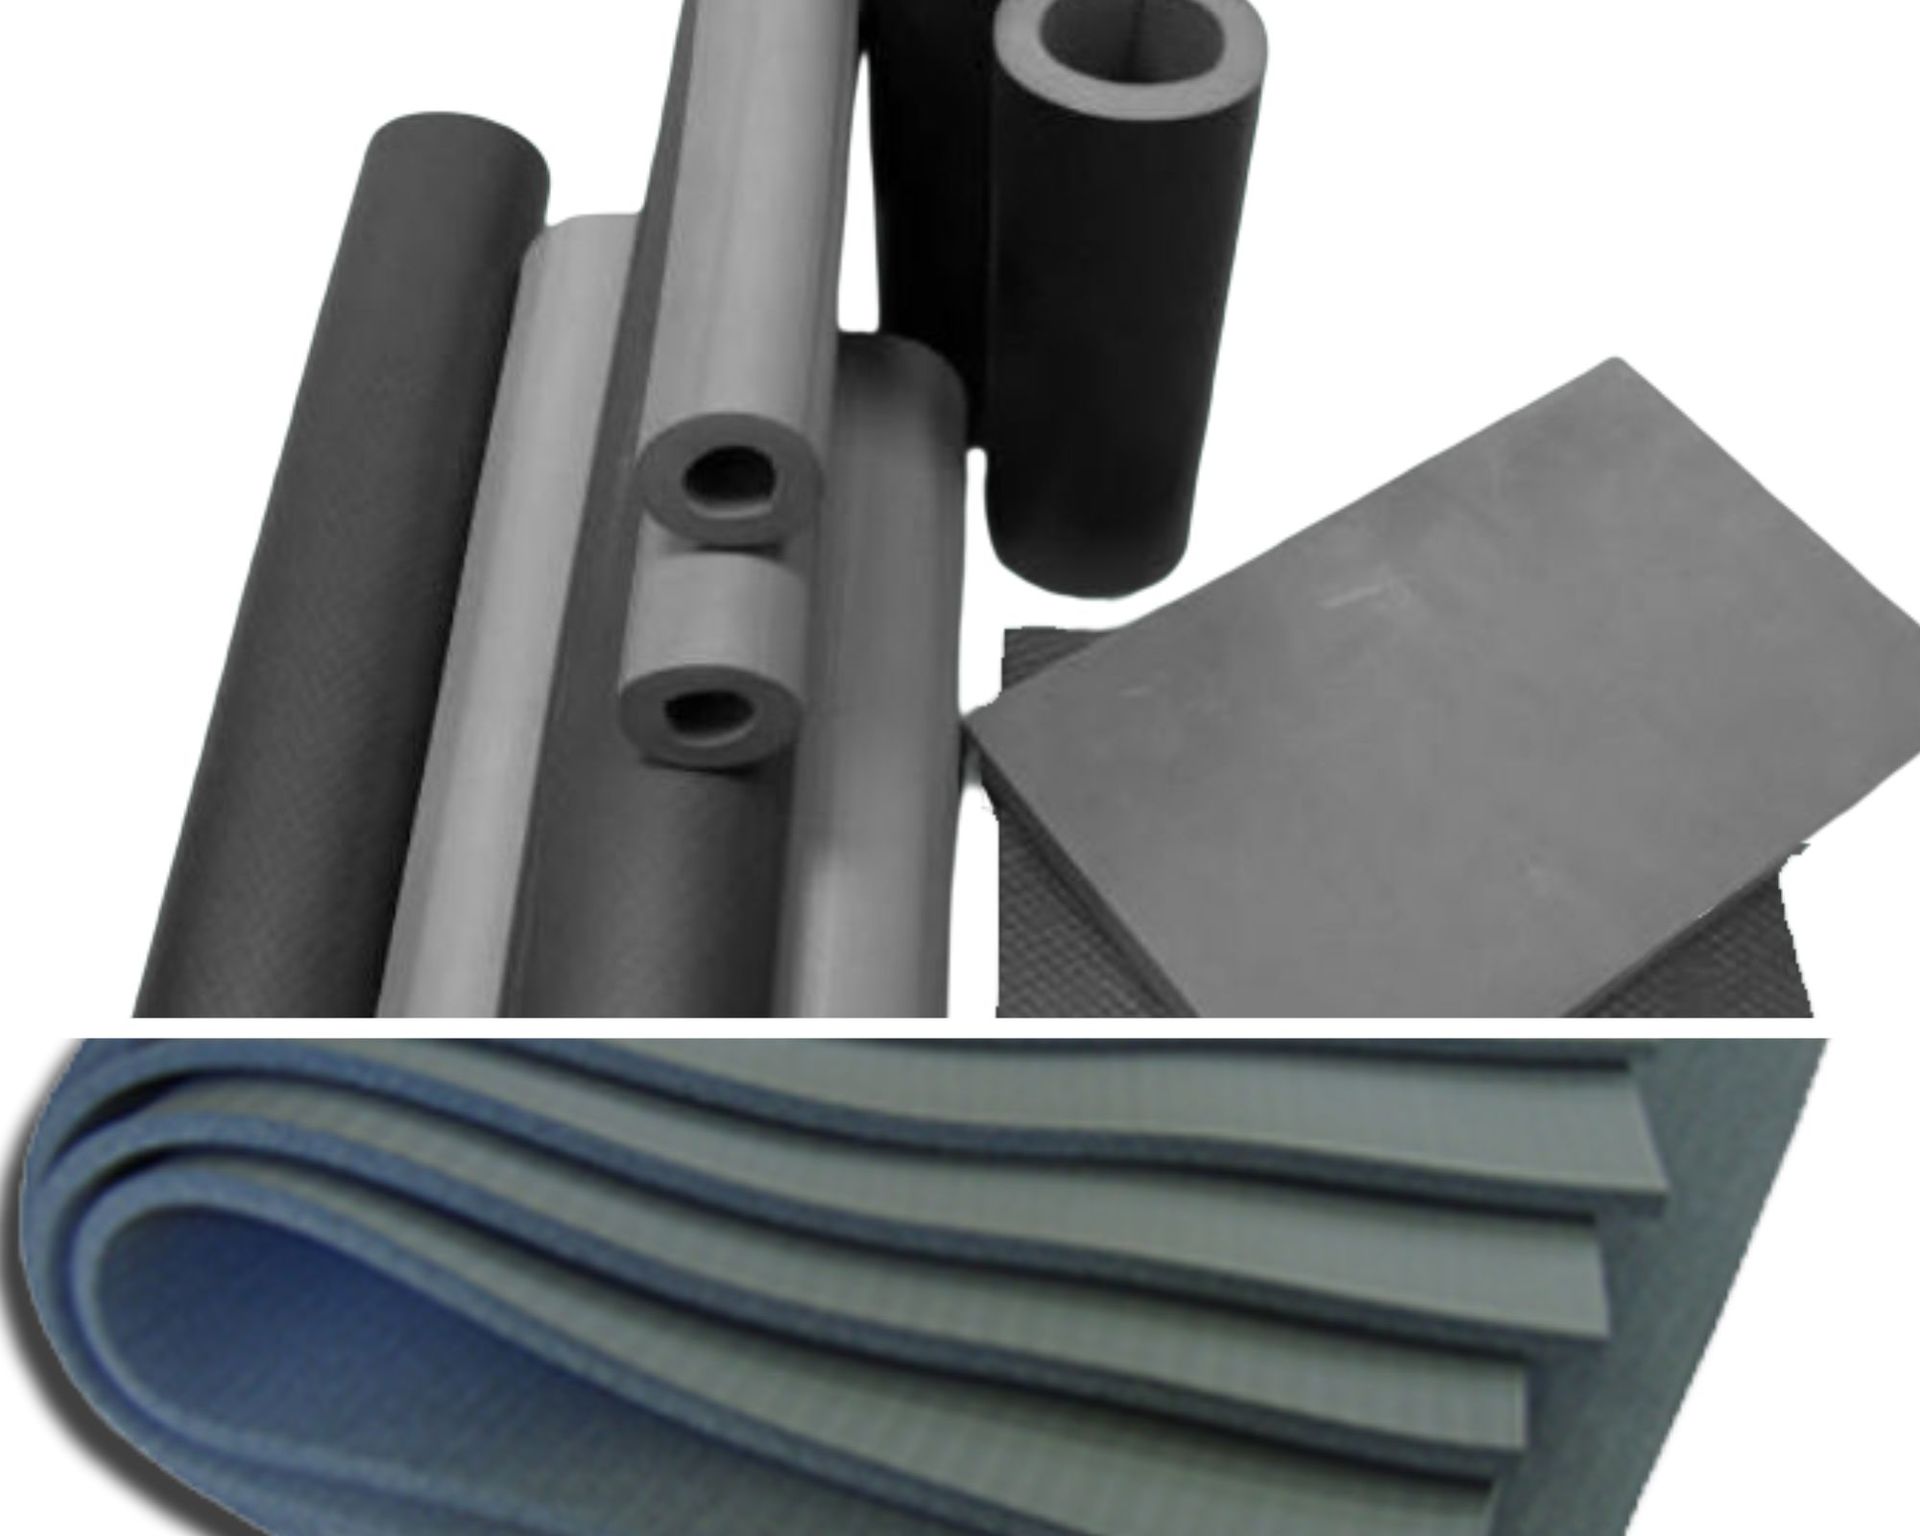 冷氣PE保溫管、保溫板規格與材質、尺寸介紹